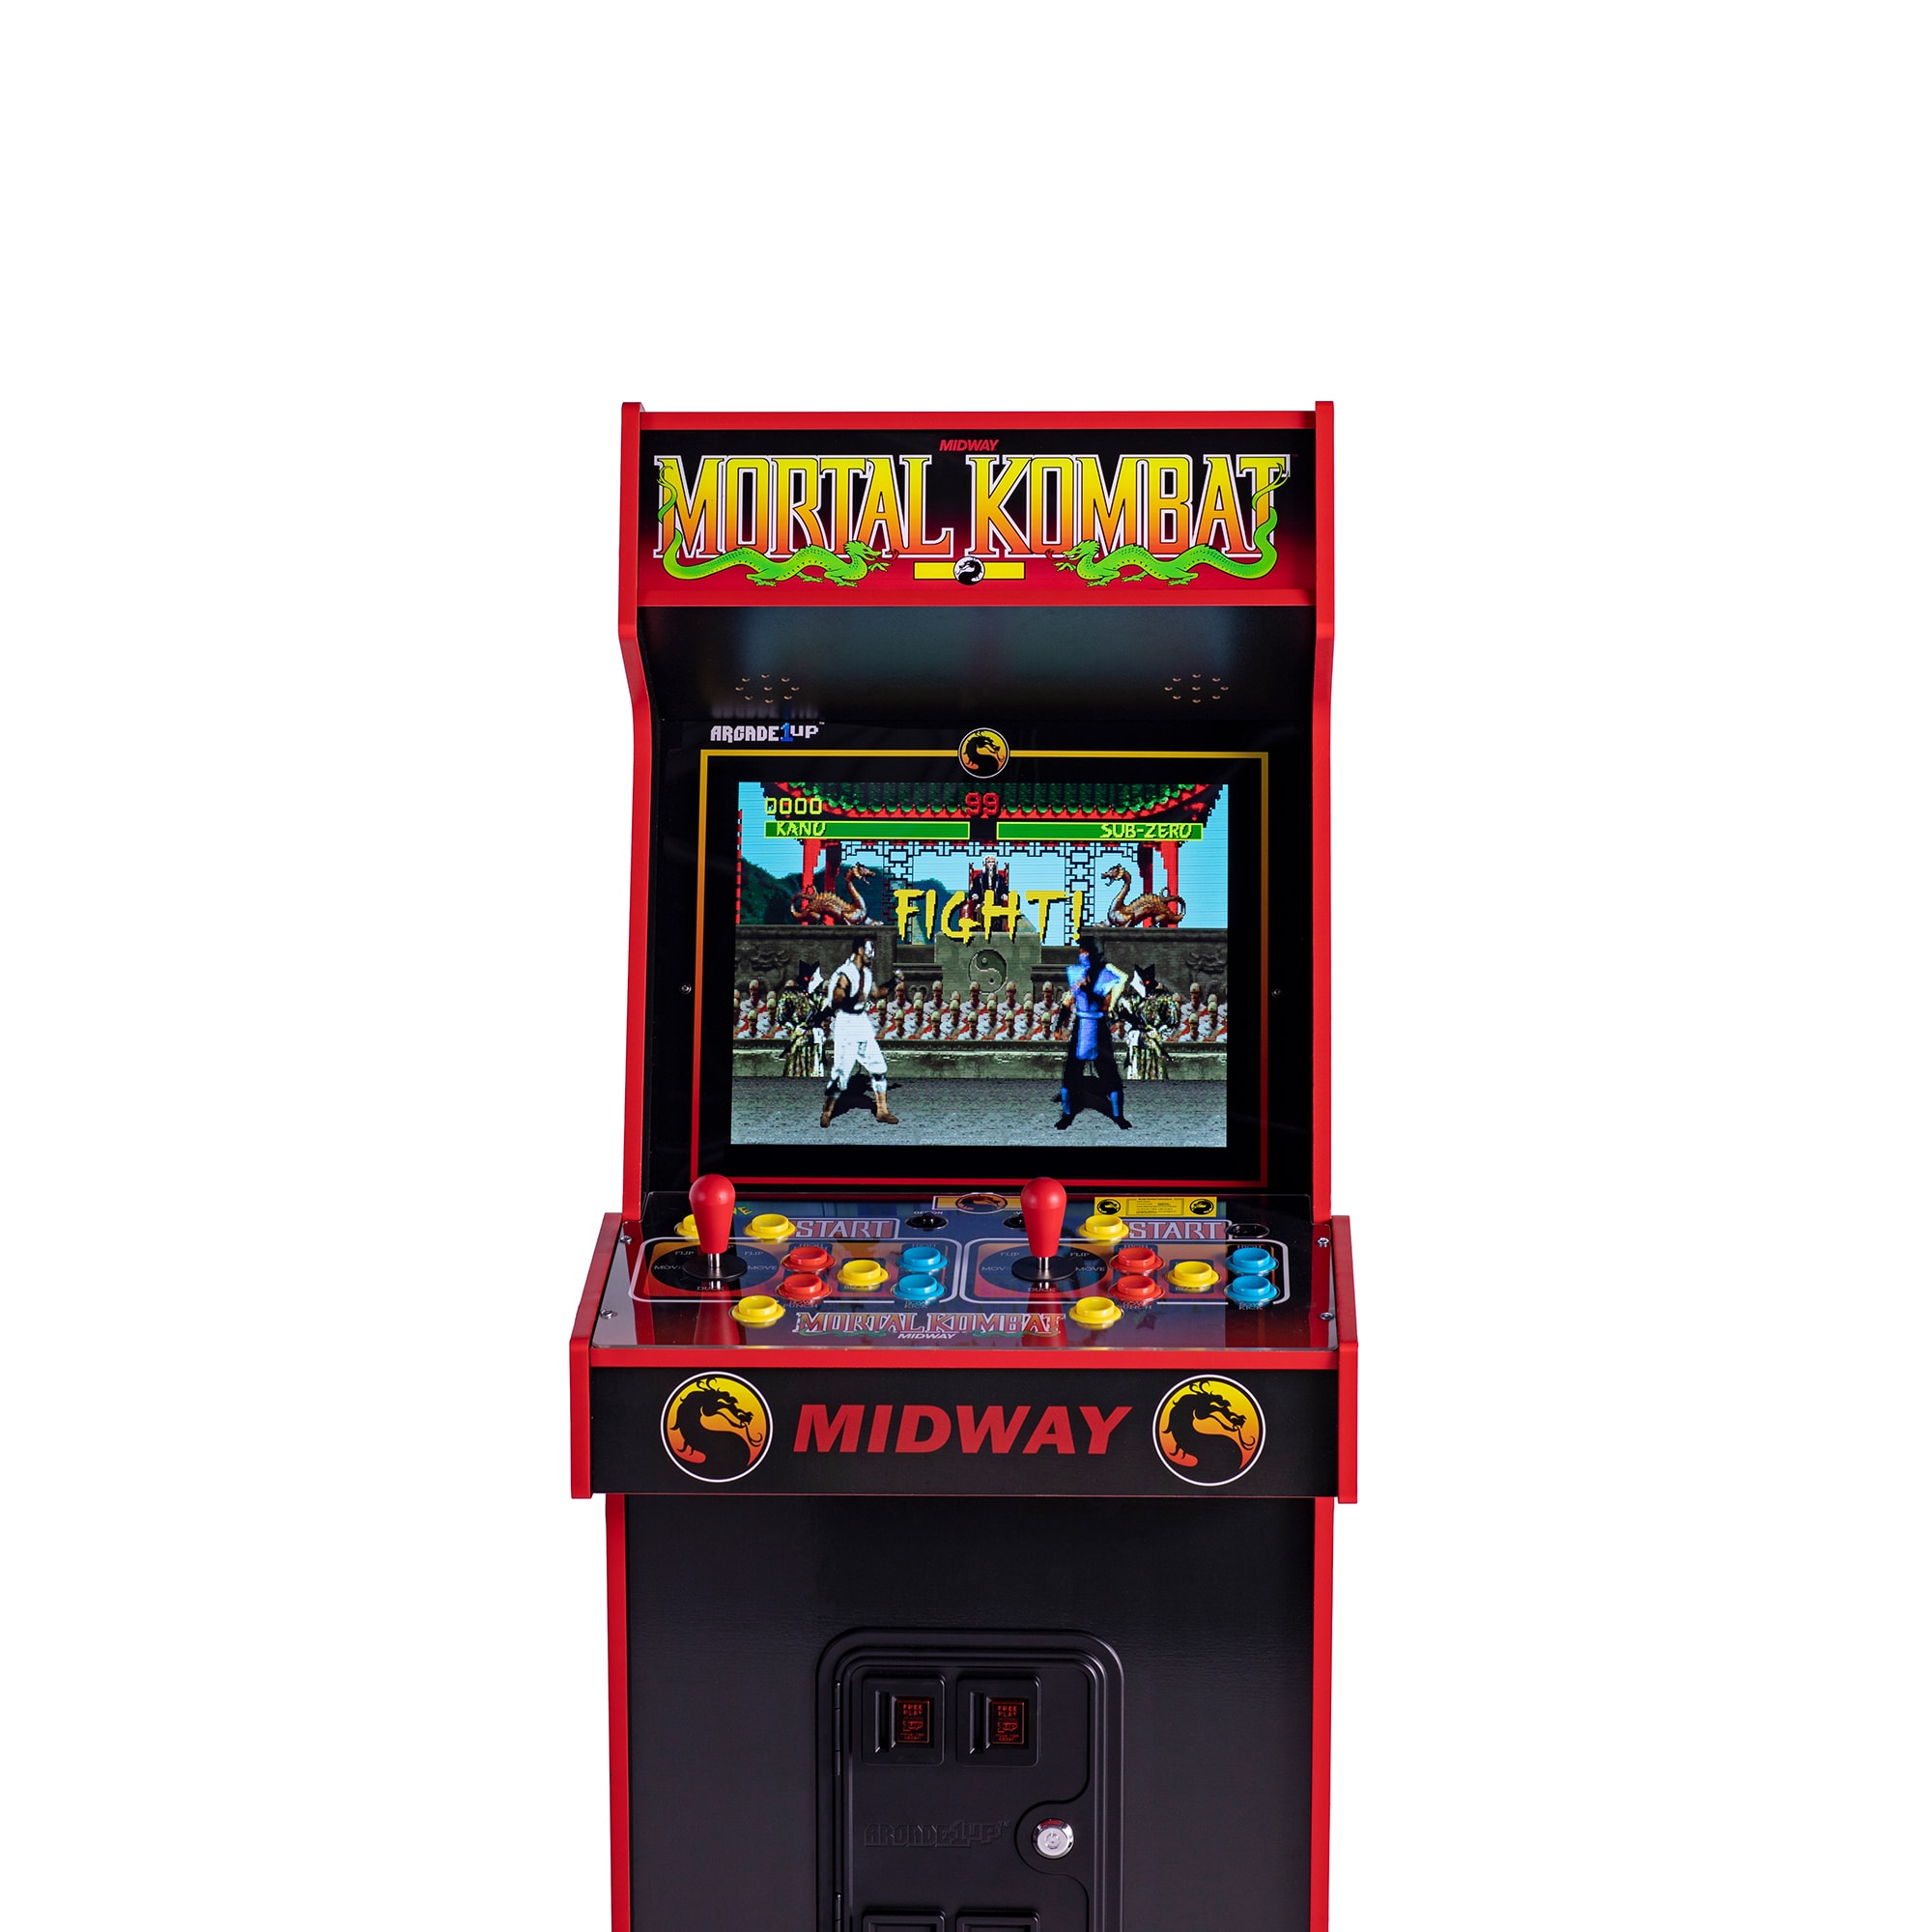 Online arcade